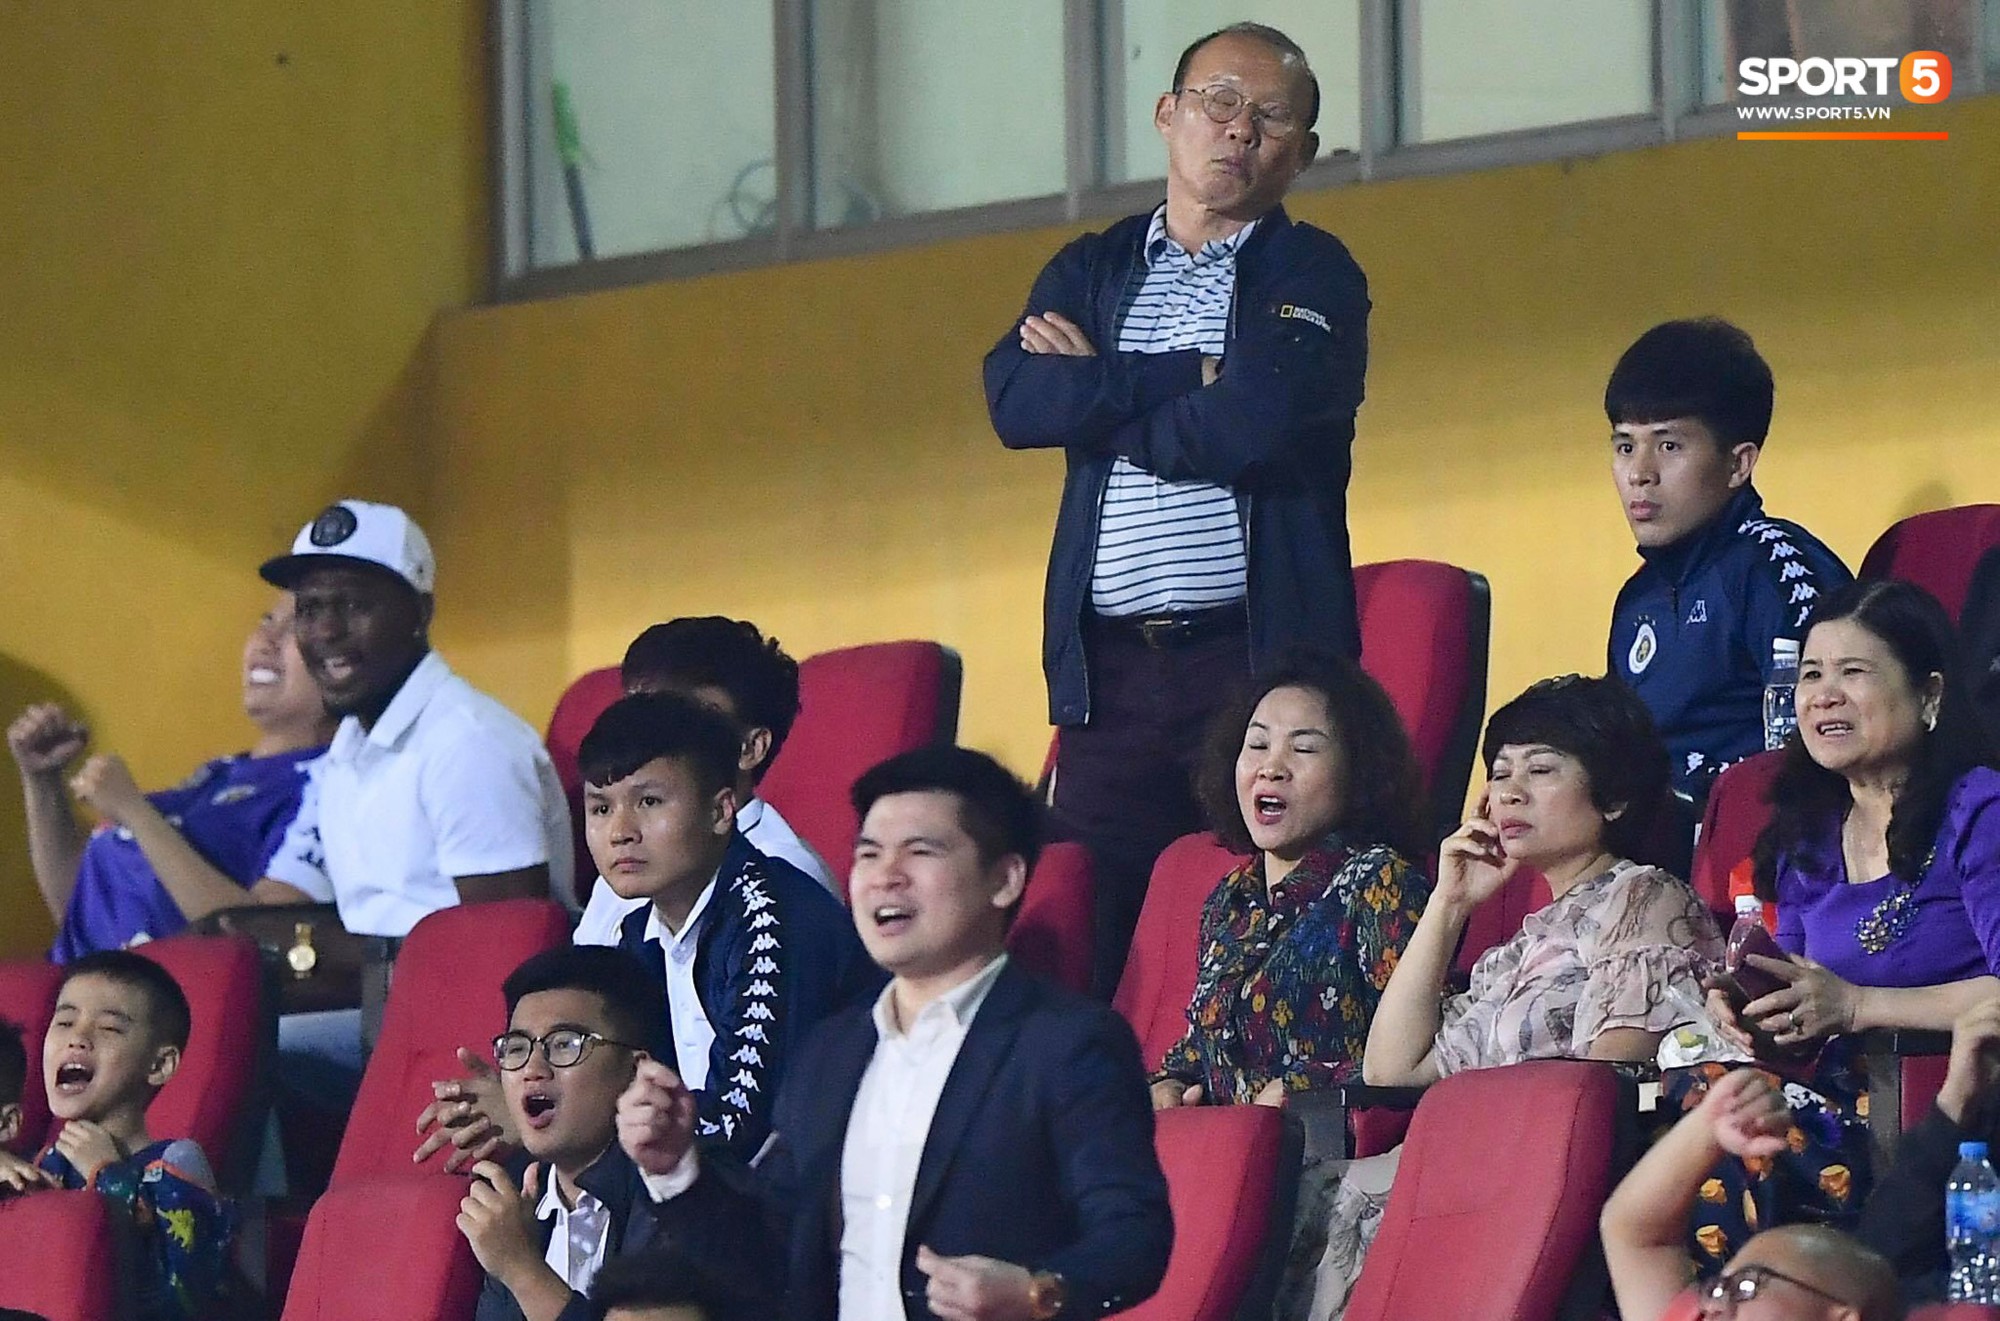 HLV Park Hang Seo, thủ môn Tiến Dũng phản ứng đầy cảm xúc khi Hà Nội FC thua ở AFC Cup 2019-2